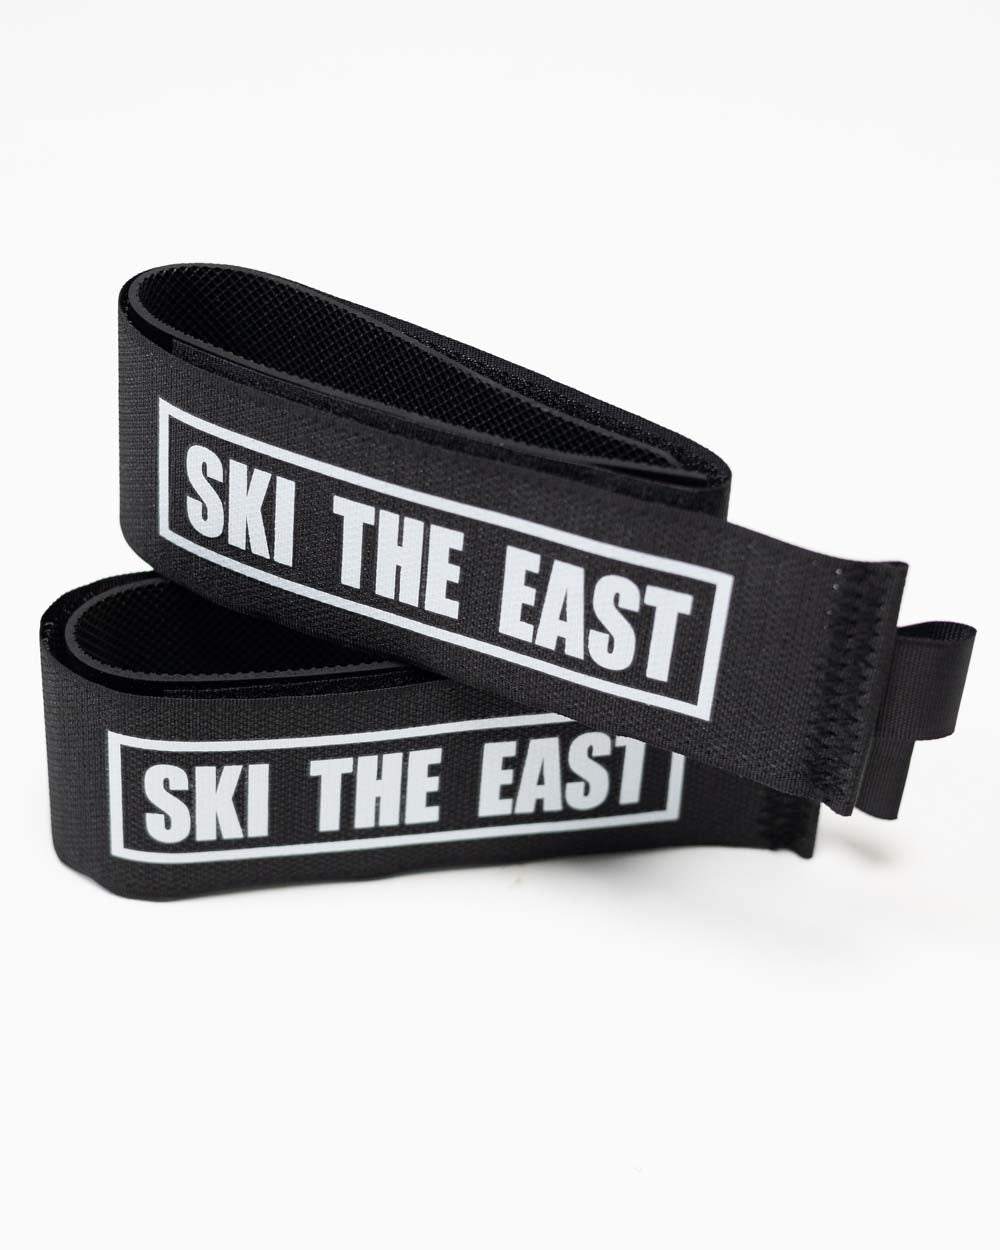 The Ski Strap